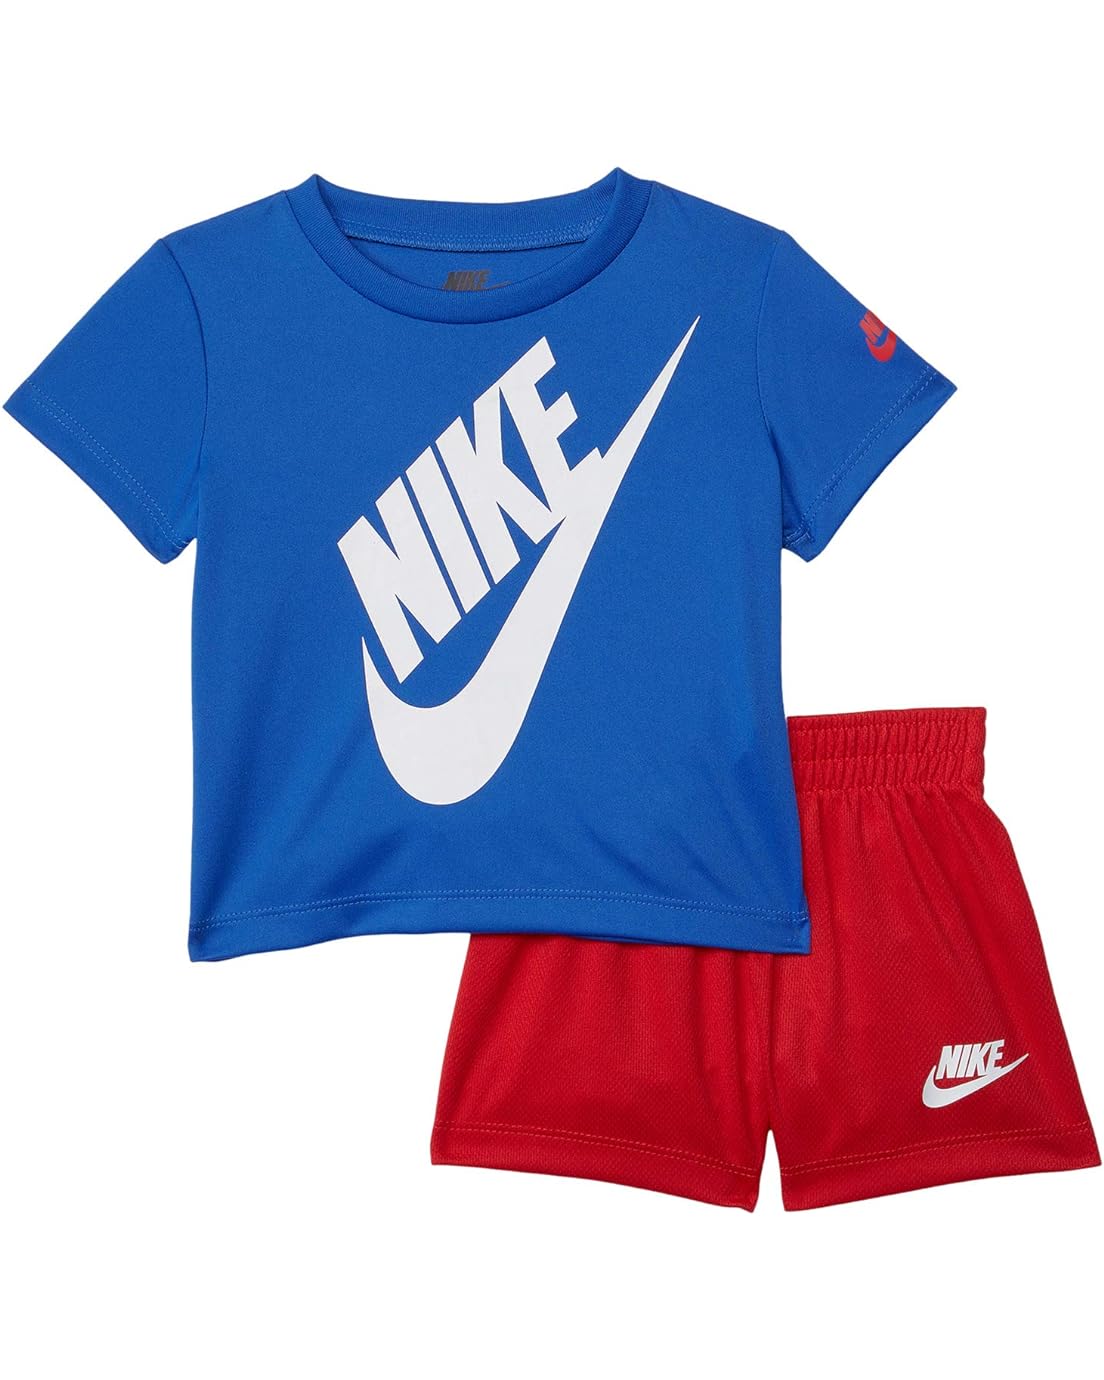 Nike Kids Short Sleeve Logo Graphic T-Shirt & Shorts Two-Piece Set (Toddler)